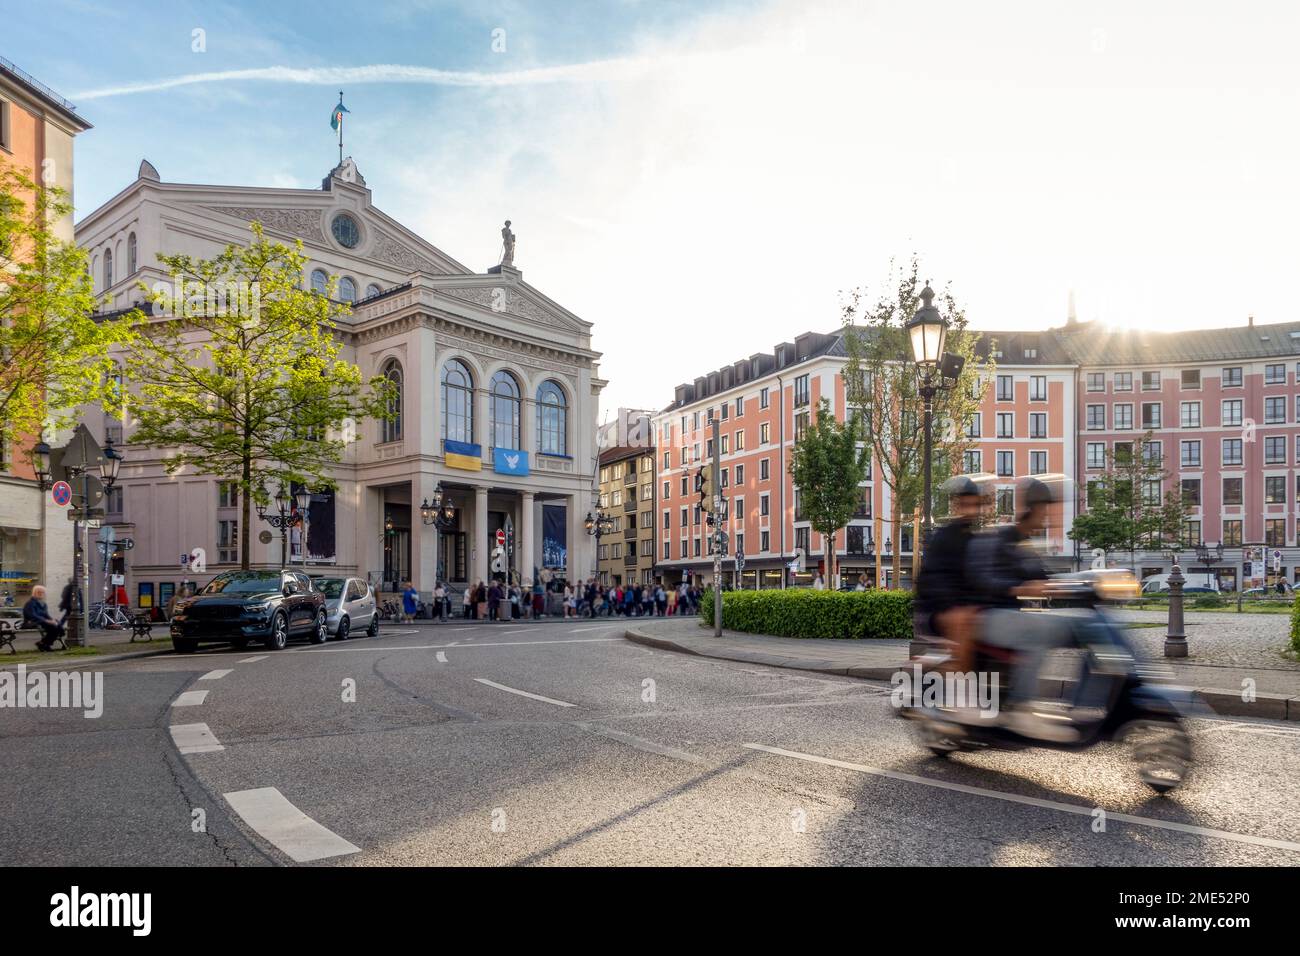 Germania, Baviera, Monaco di Baviera, movimento sfocato dello scooter a motore che passa attraverso piazza Gartnerplatz al tramonto Foto Stock